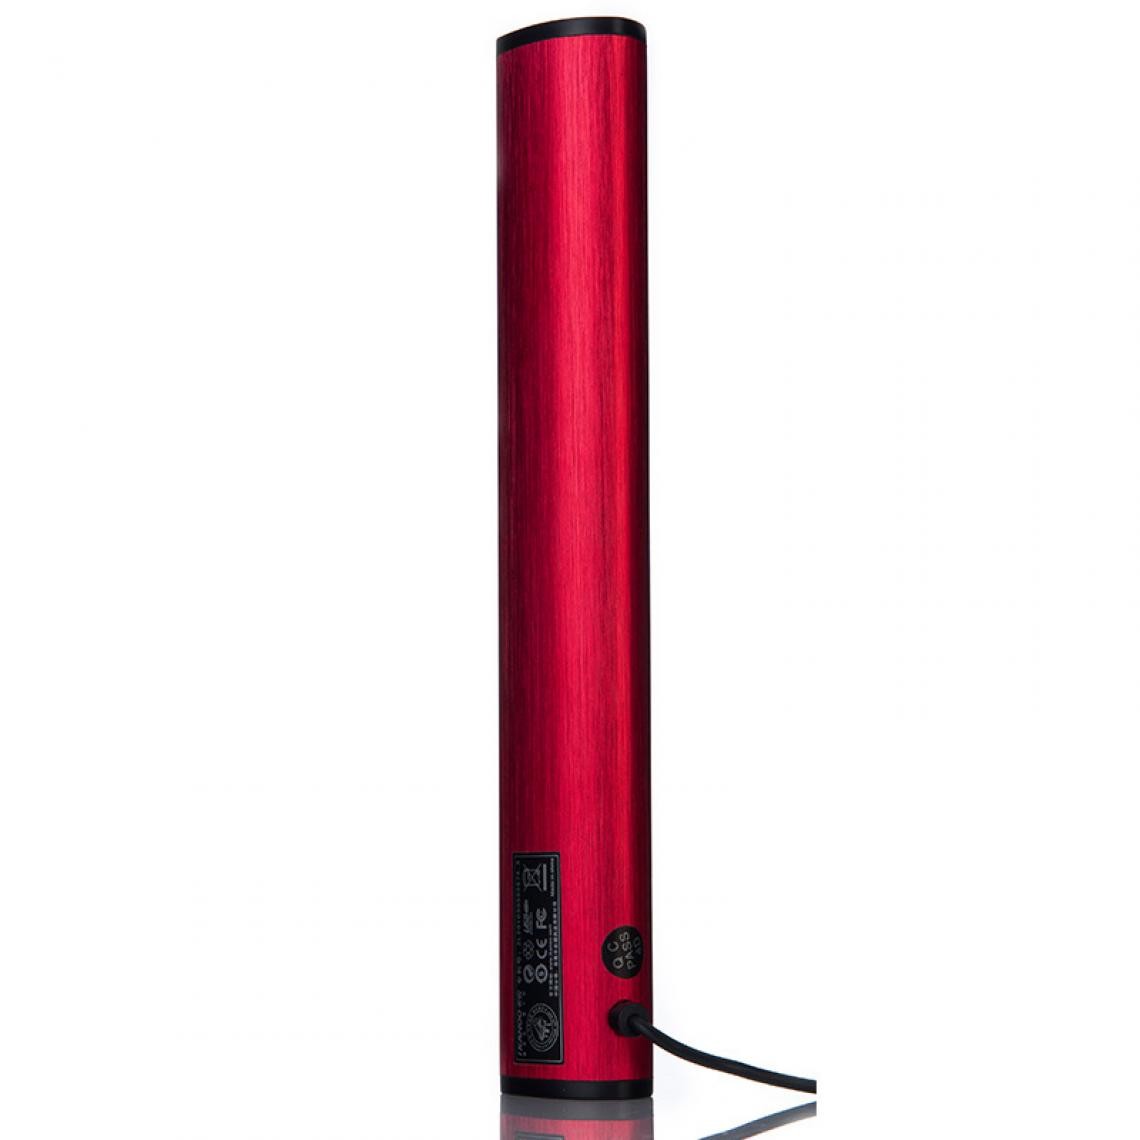 Universal - Haut-parleurs pour ordinateurs portables USB portable Ordinateur audio Mini haut-parleurs Subwoofer Bar Bang(Rouge) - Enceinte PC